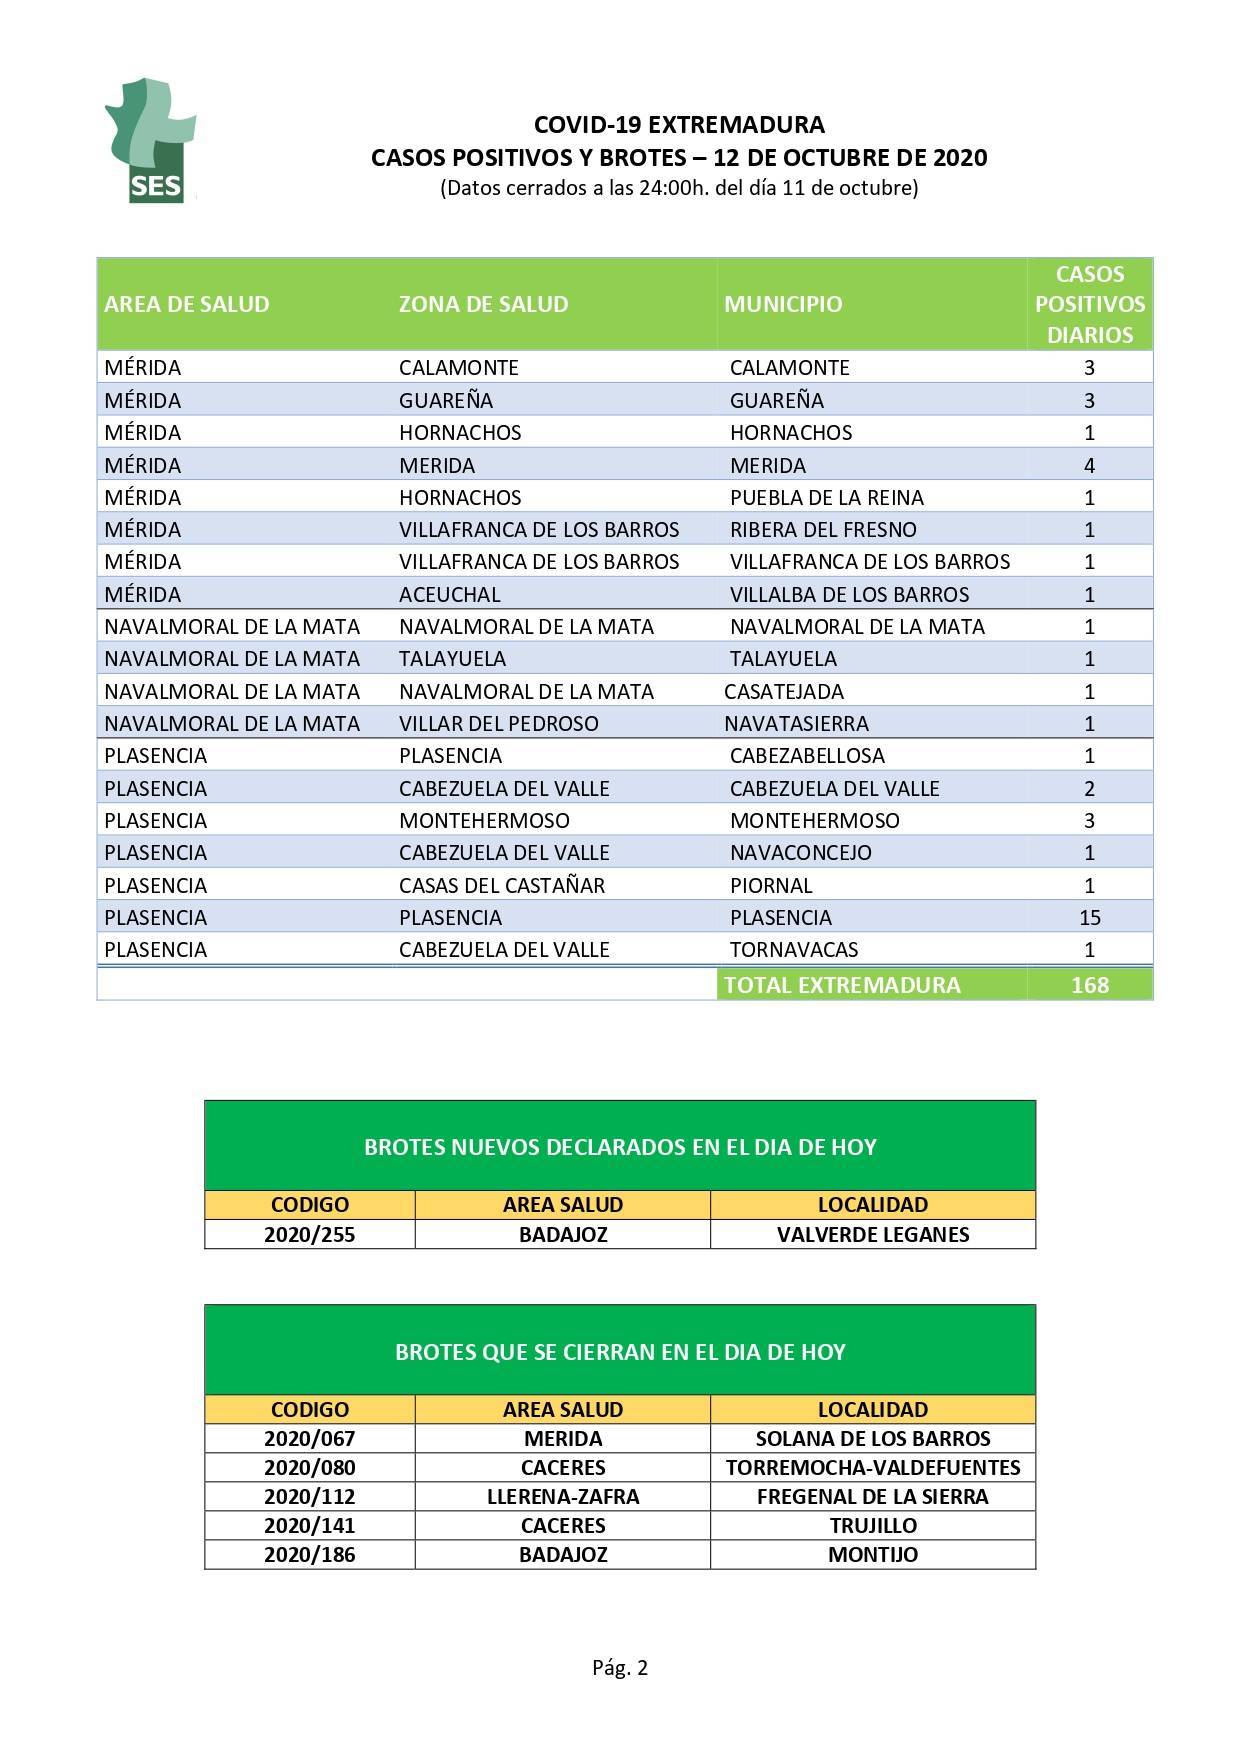 Nueve casos activos de COVID-19 (octubre 2020) - Navatrasierra (Cáceres)